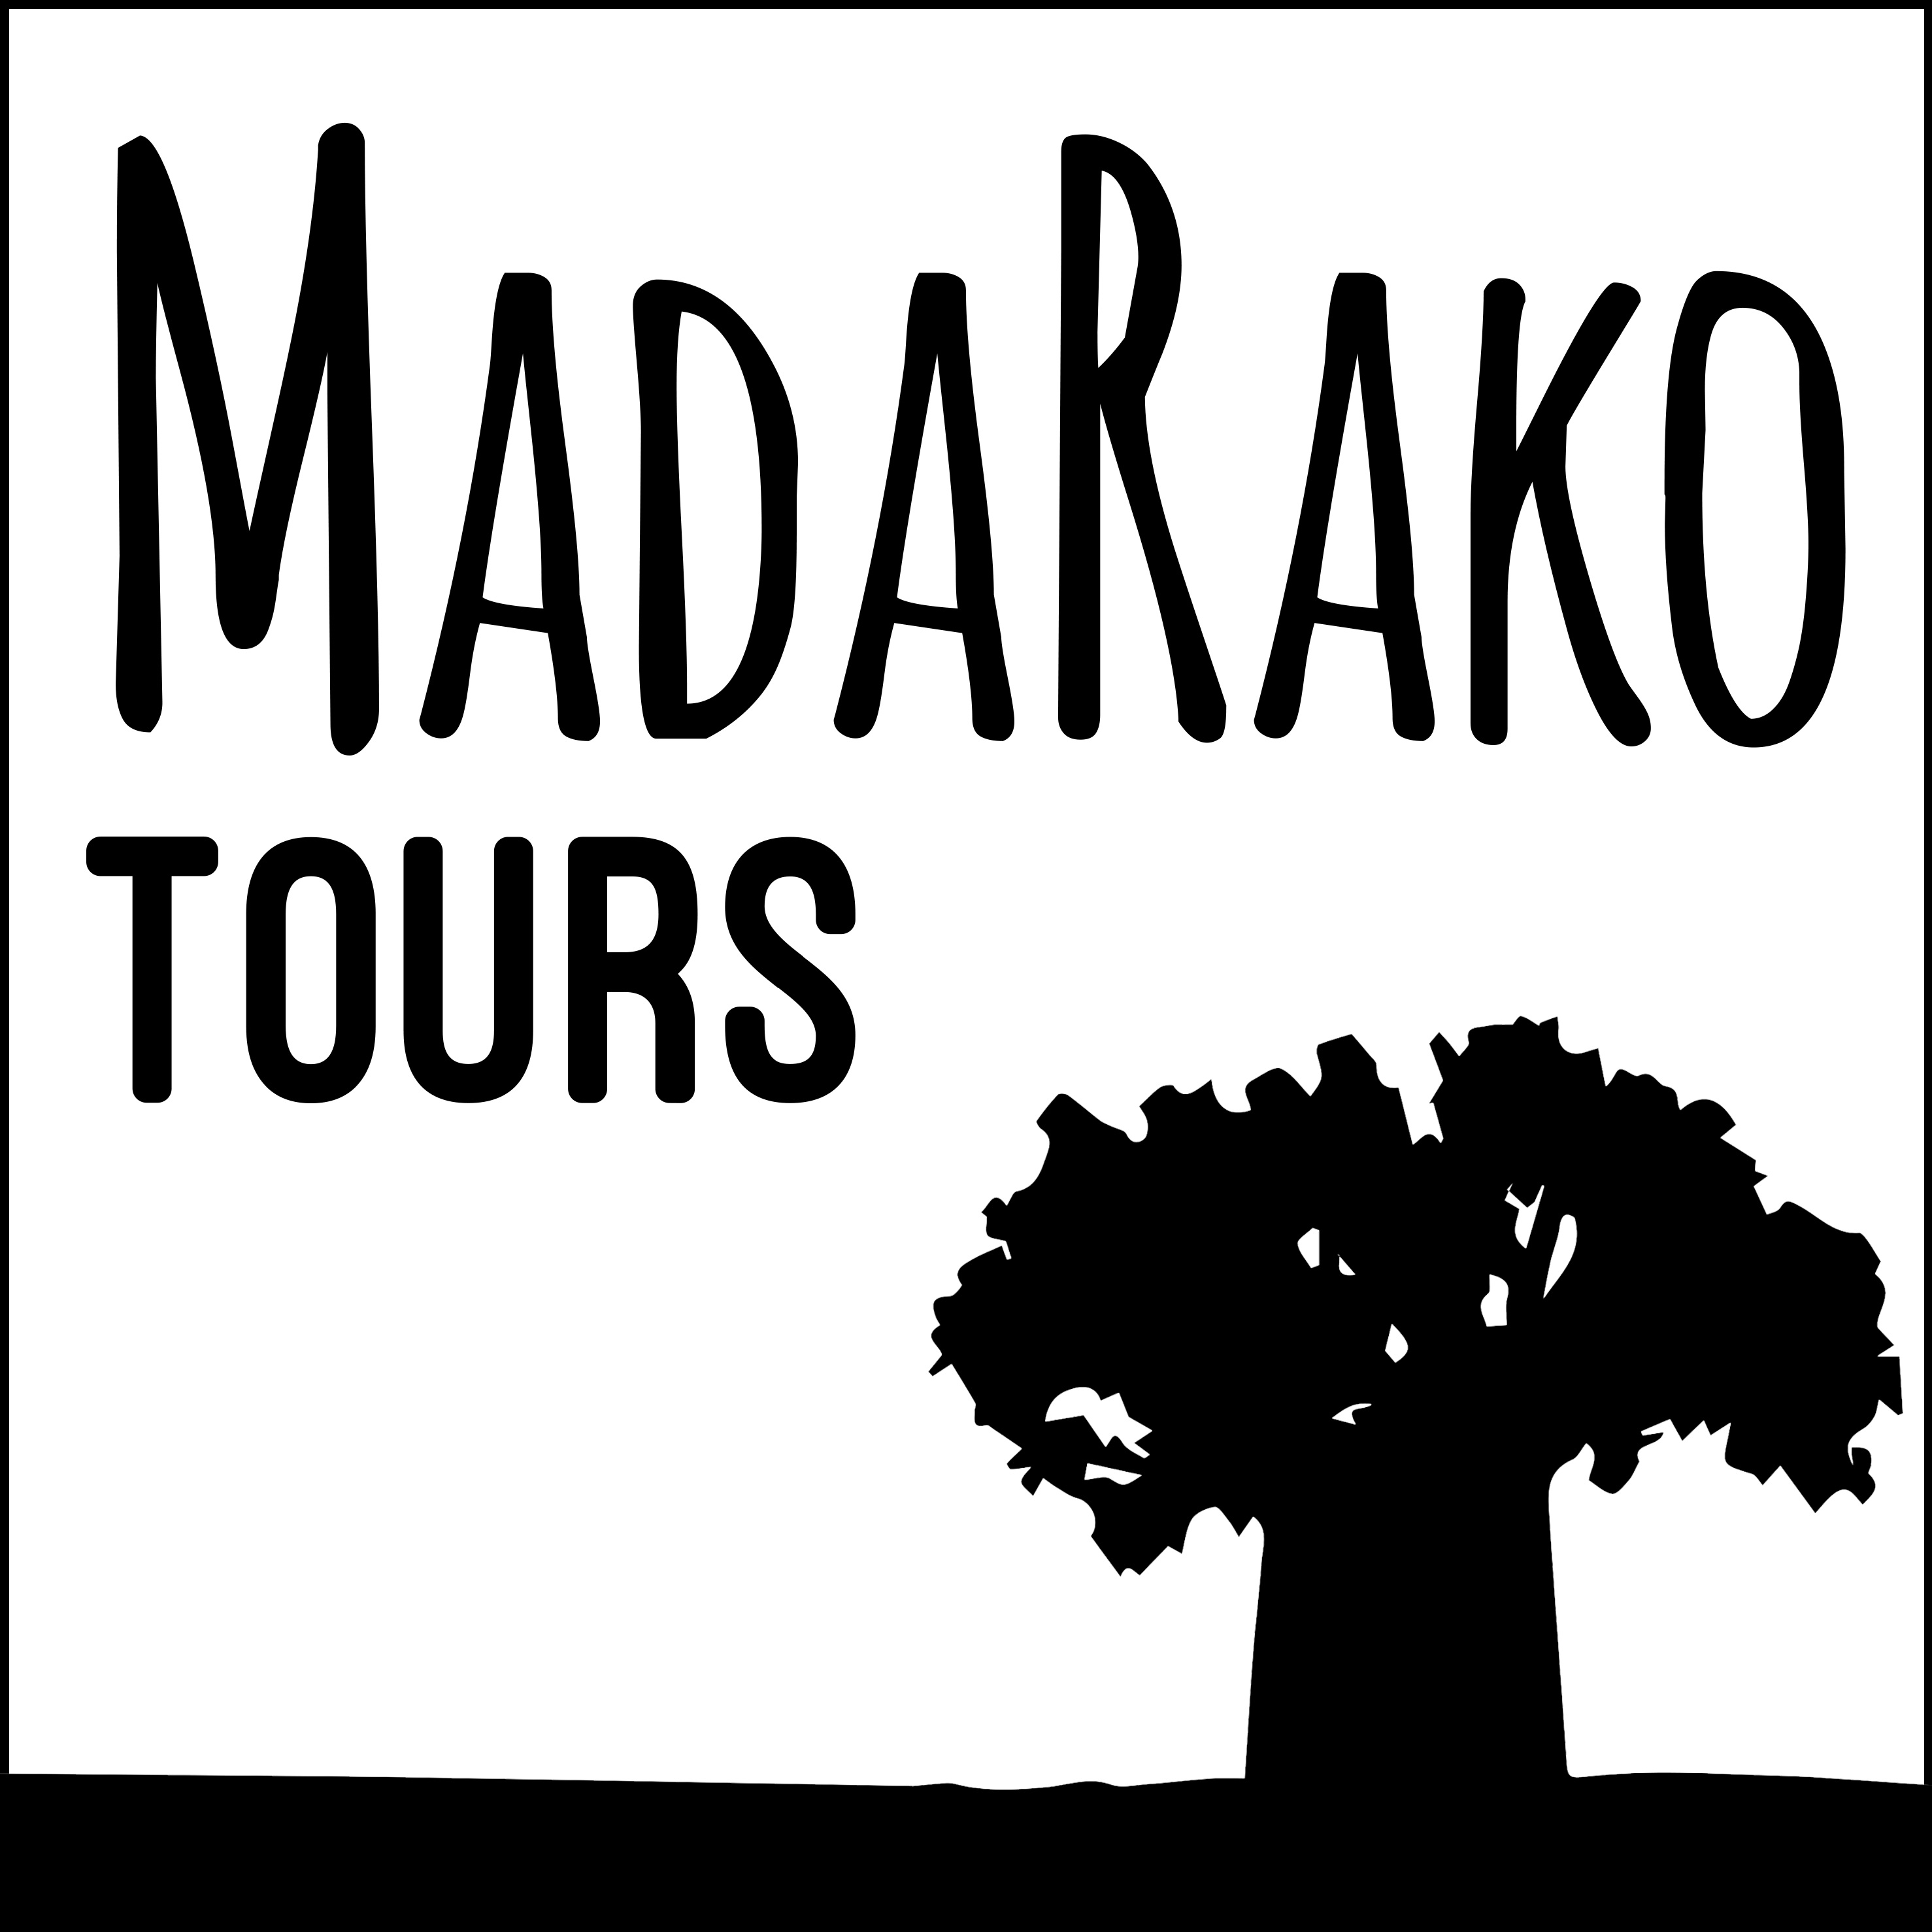 Madarako Tours